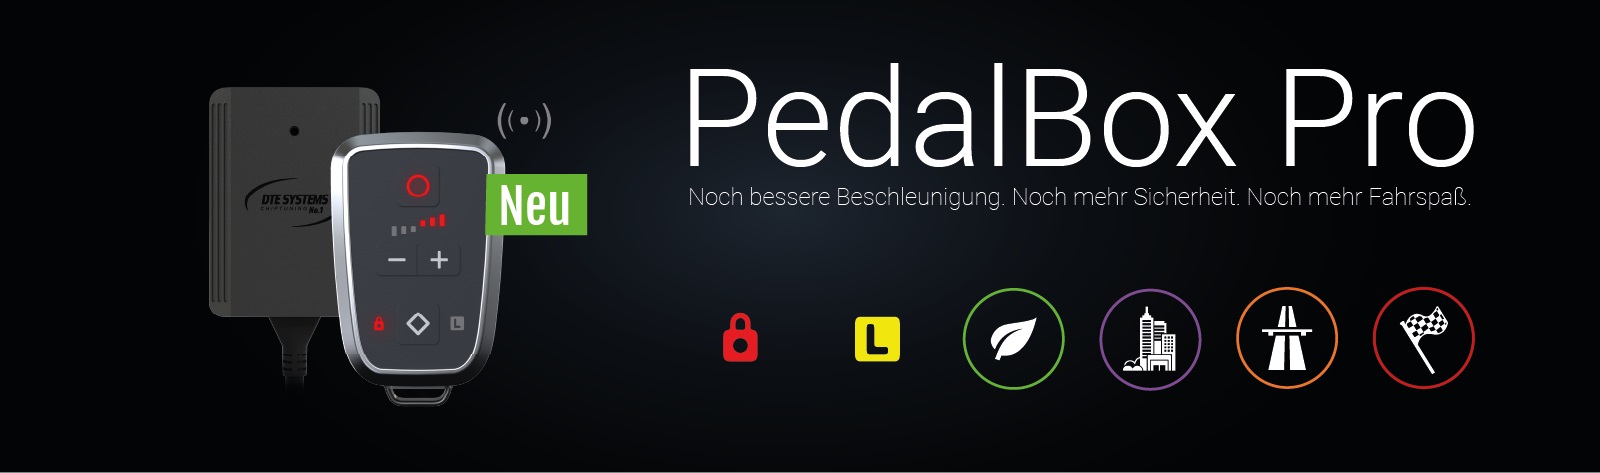 Die neue Pedalbox Pro aus dem Hause DTE SYSTEMS